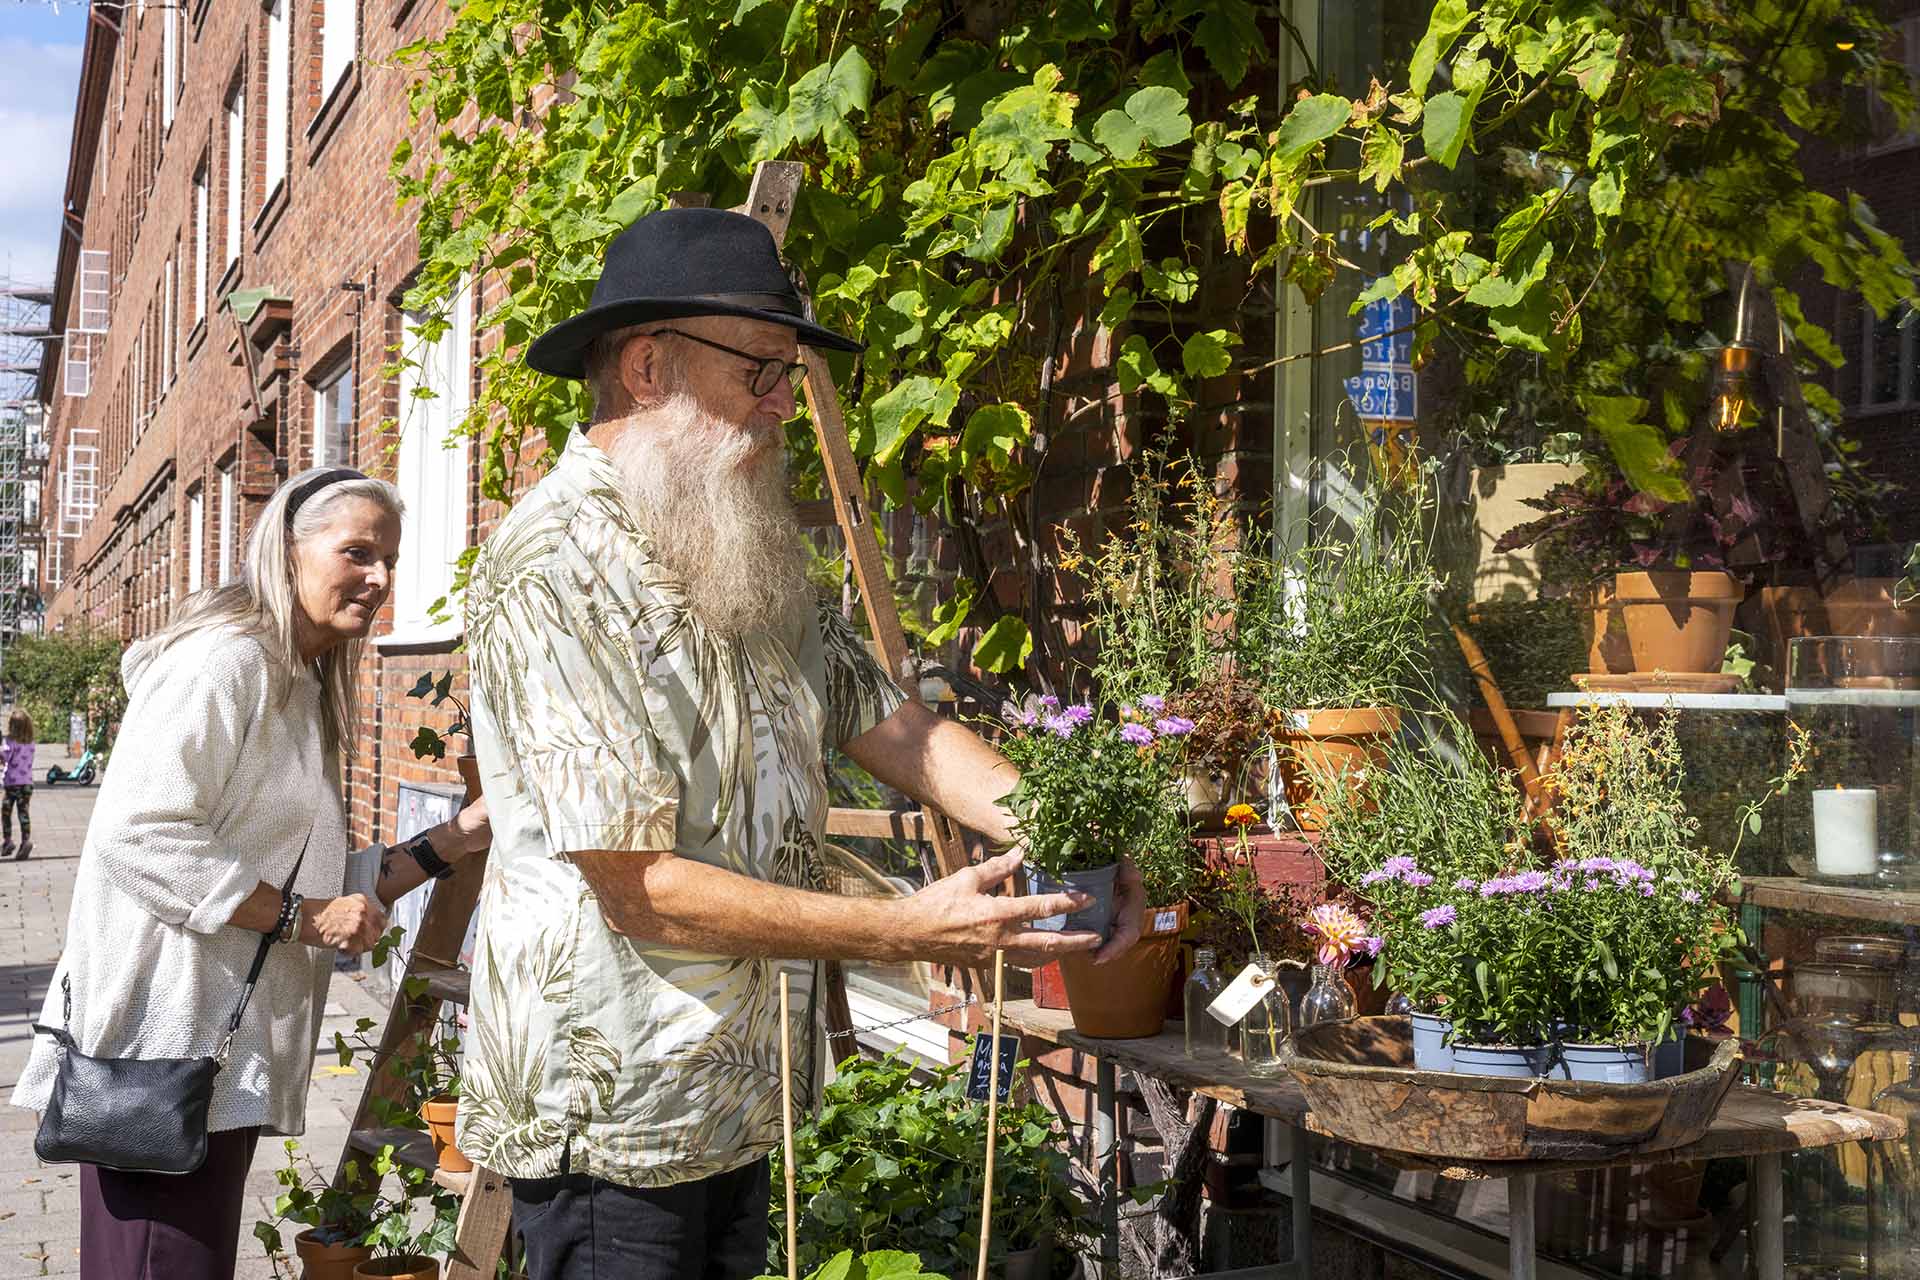 En man med vitt skägg och svart hatt står utanför en blomsterbutik och tittar på en krukväxt. En kvinna med grått hår står vid sidan om och tittar nyfiket.